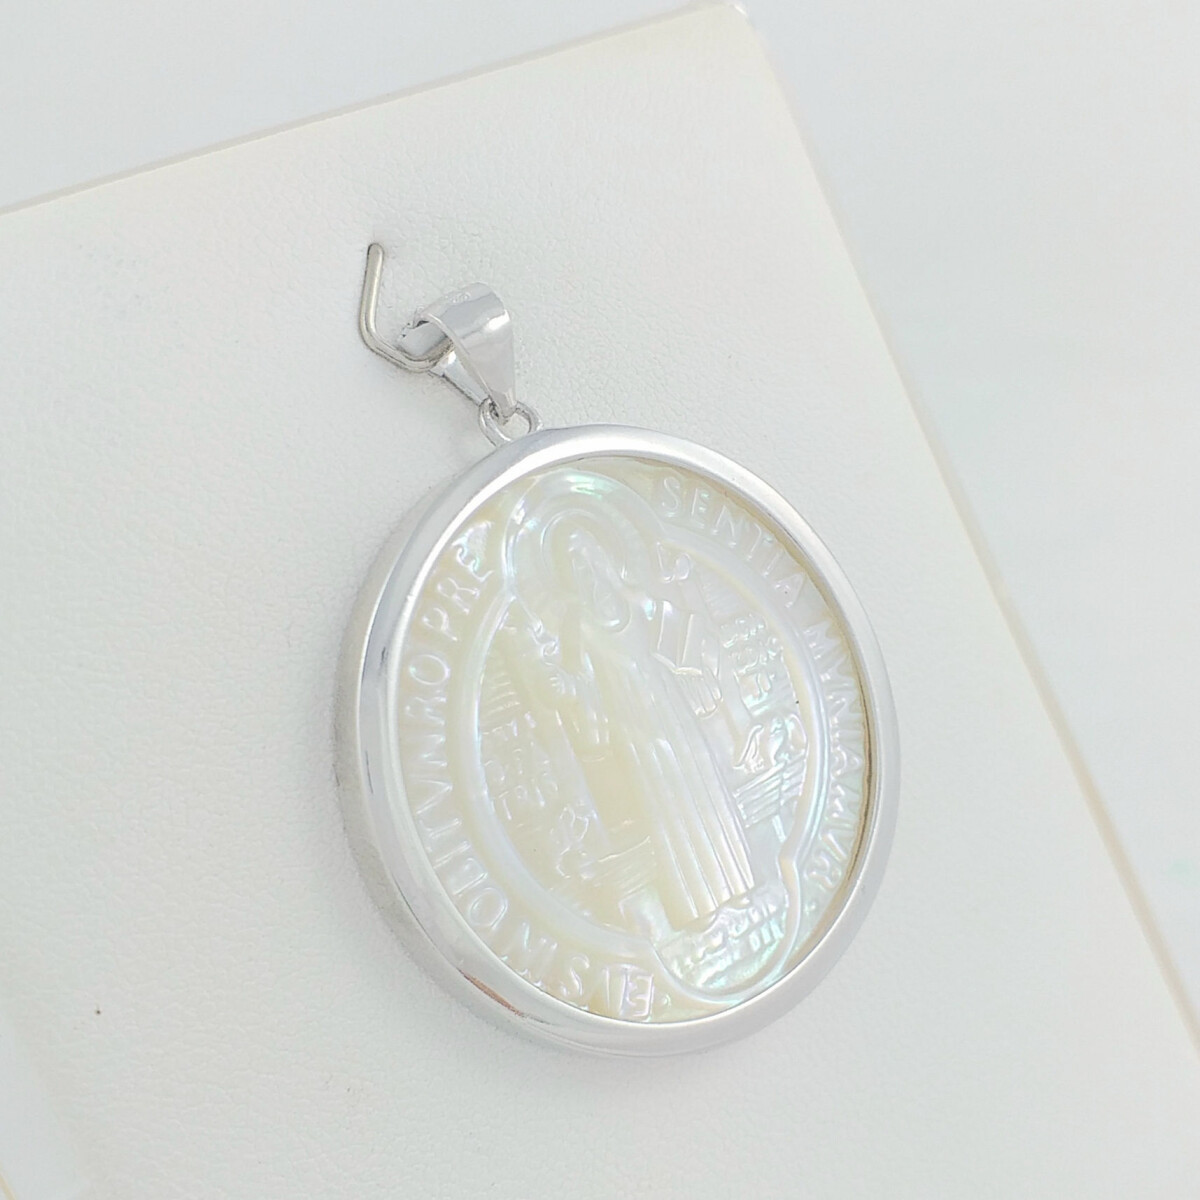 Medalla religiosa de plata 925, San Benito en nácar, diámetro 33mm. 